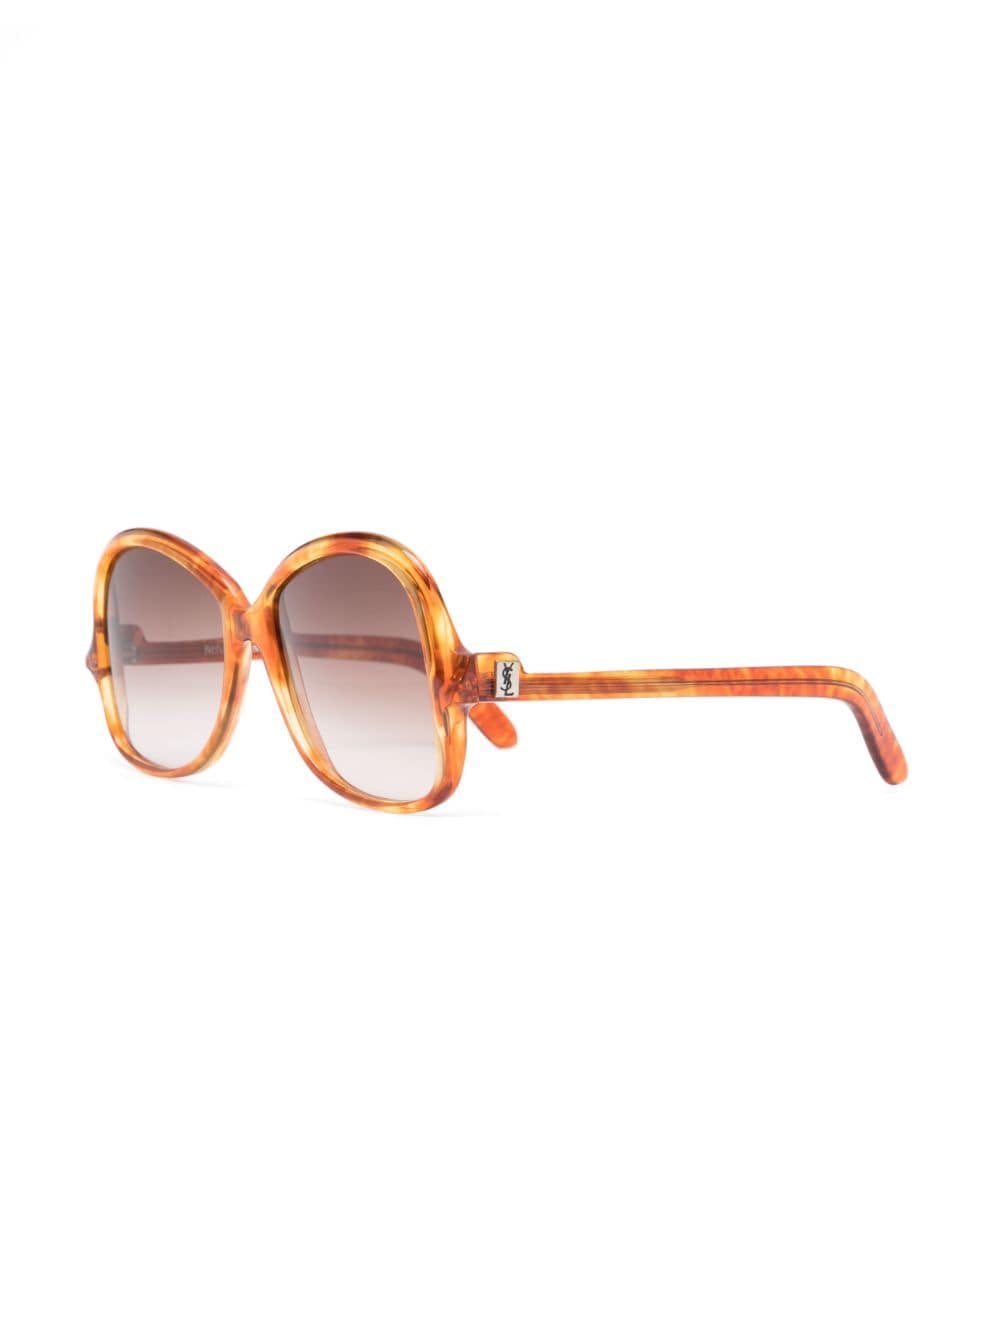 Saint Laurent Pre-Owned 1970s zonnebril met rond montuur - Bruin